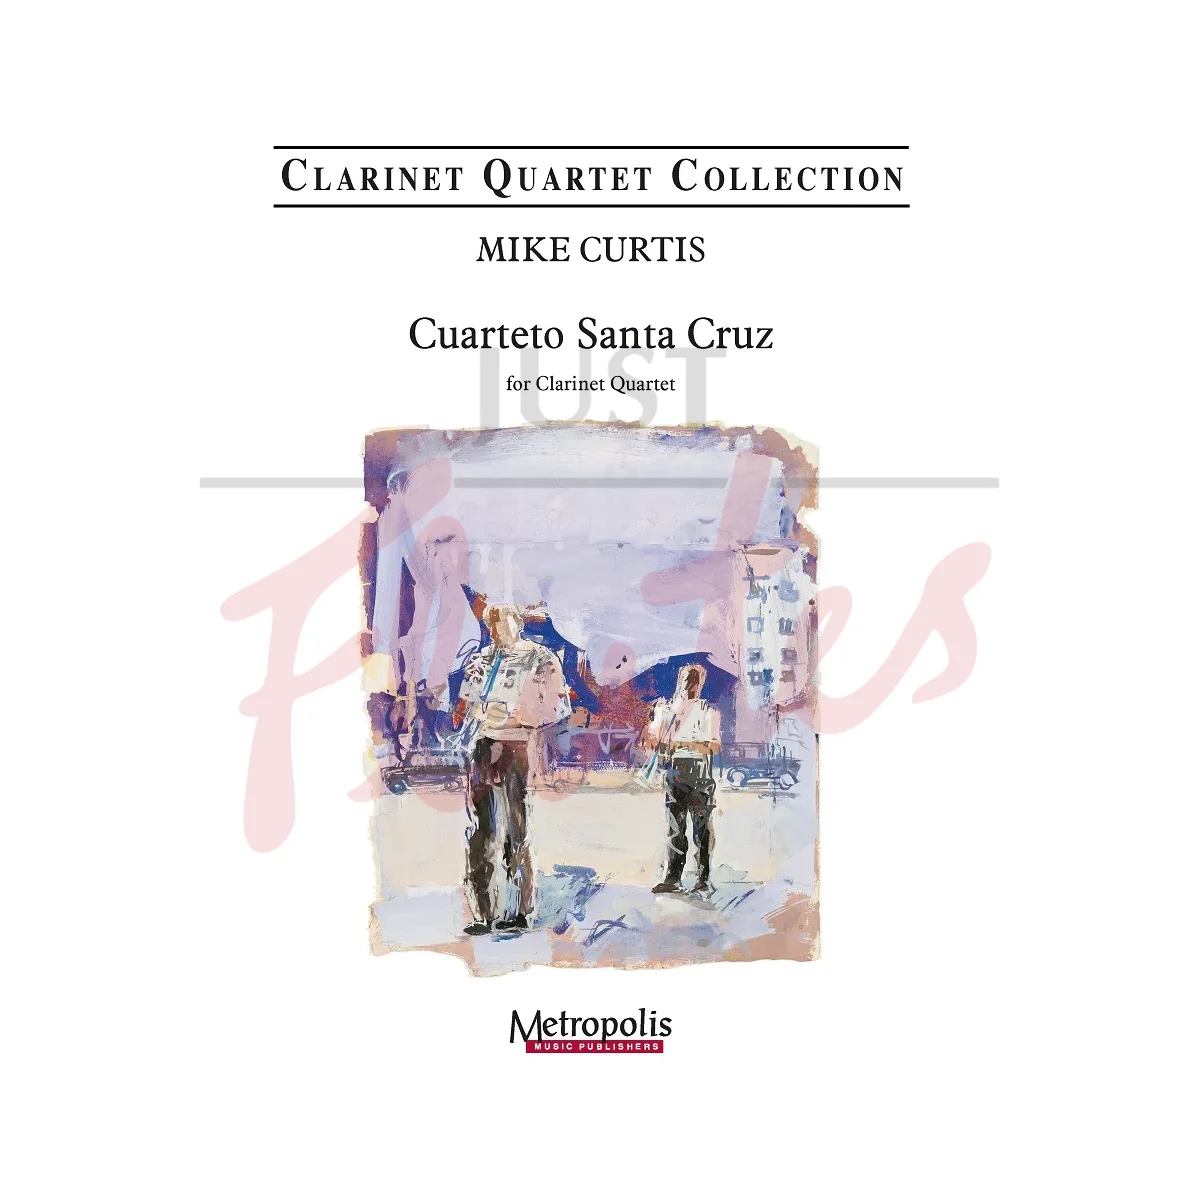 Cuarteto Santa Cruz for Clarinet Quartet